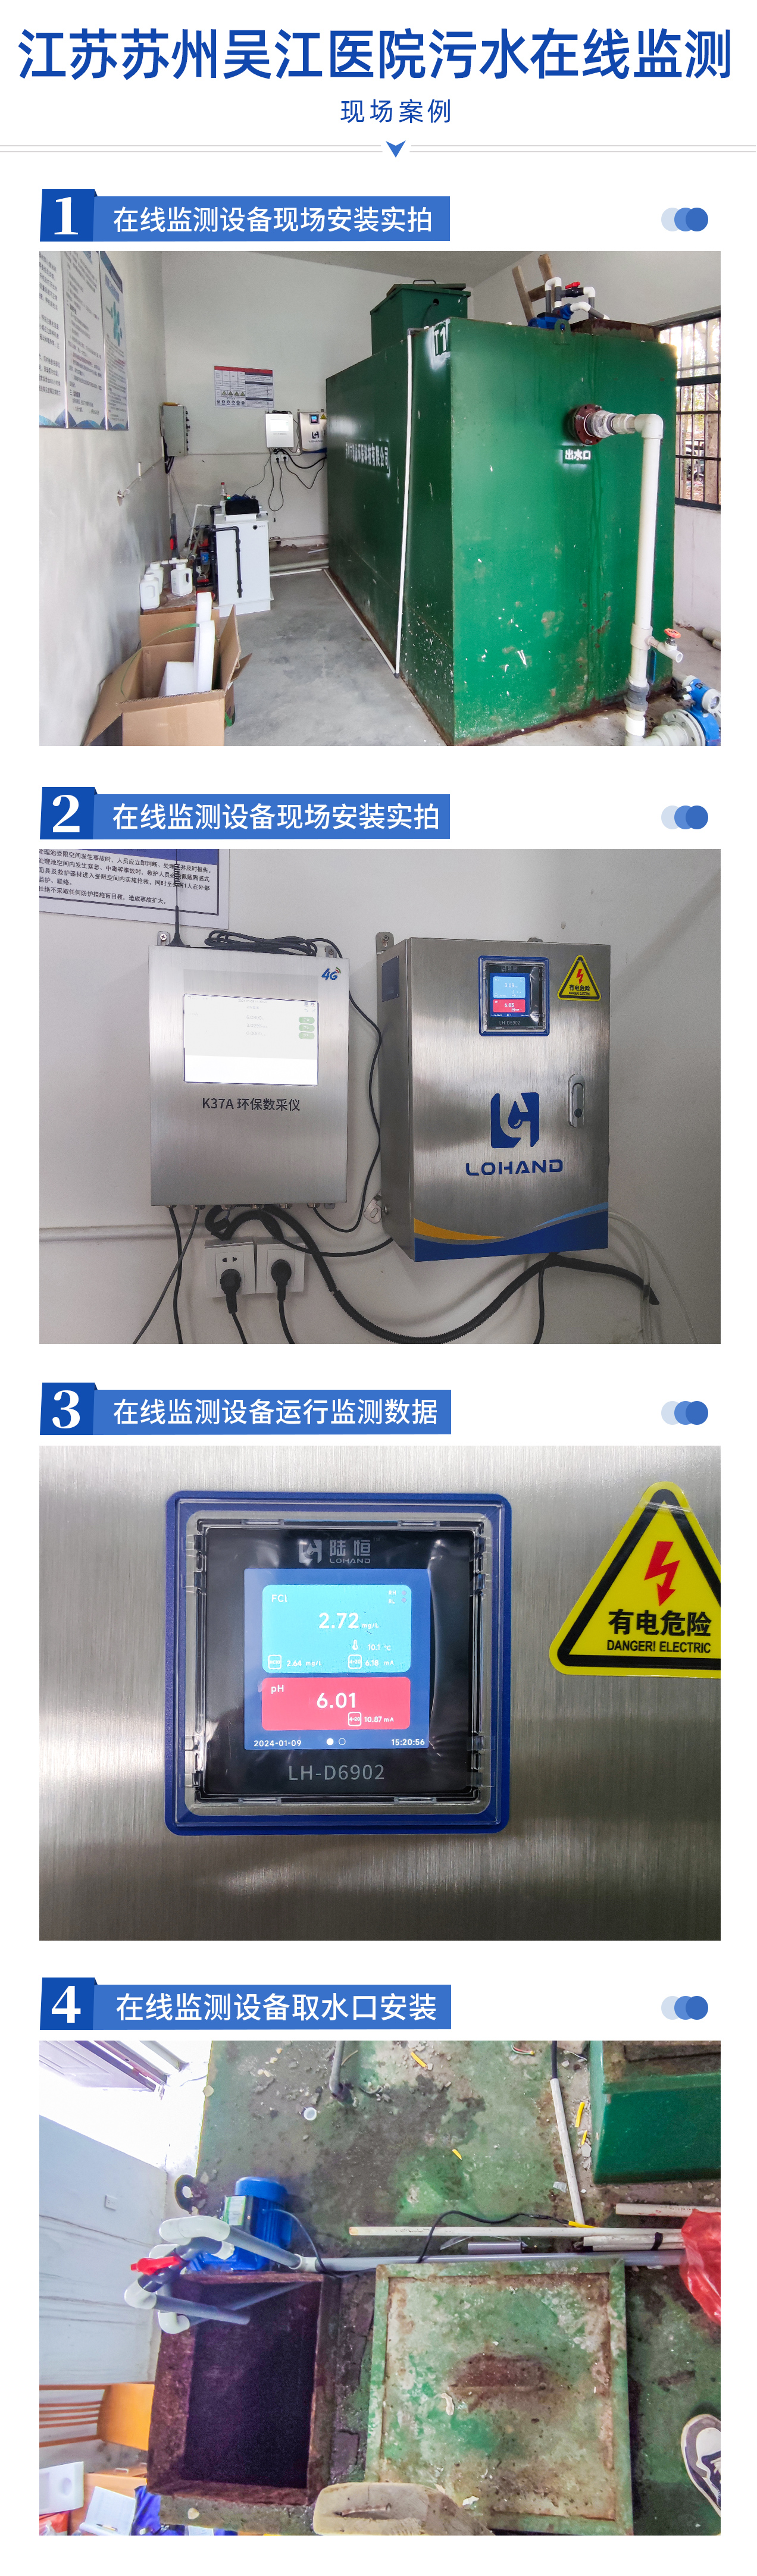 陆恒案例 | 江苏苏州吴江医院污水在线监测(图1)